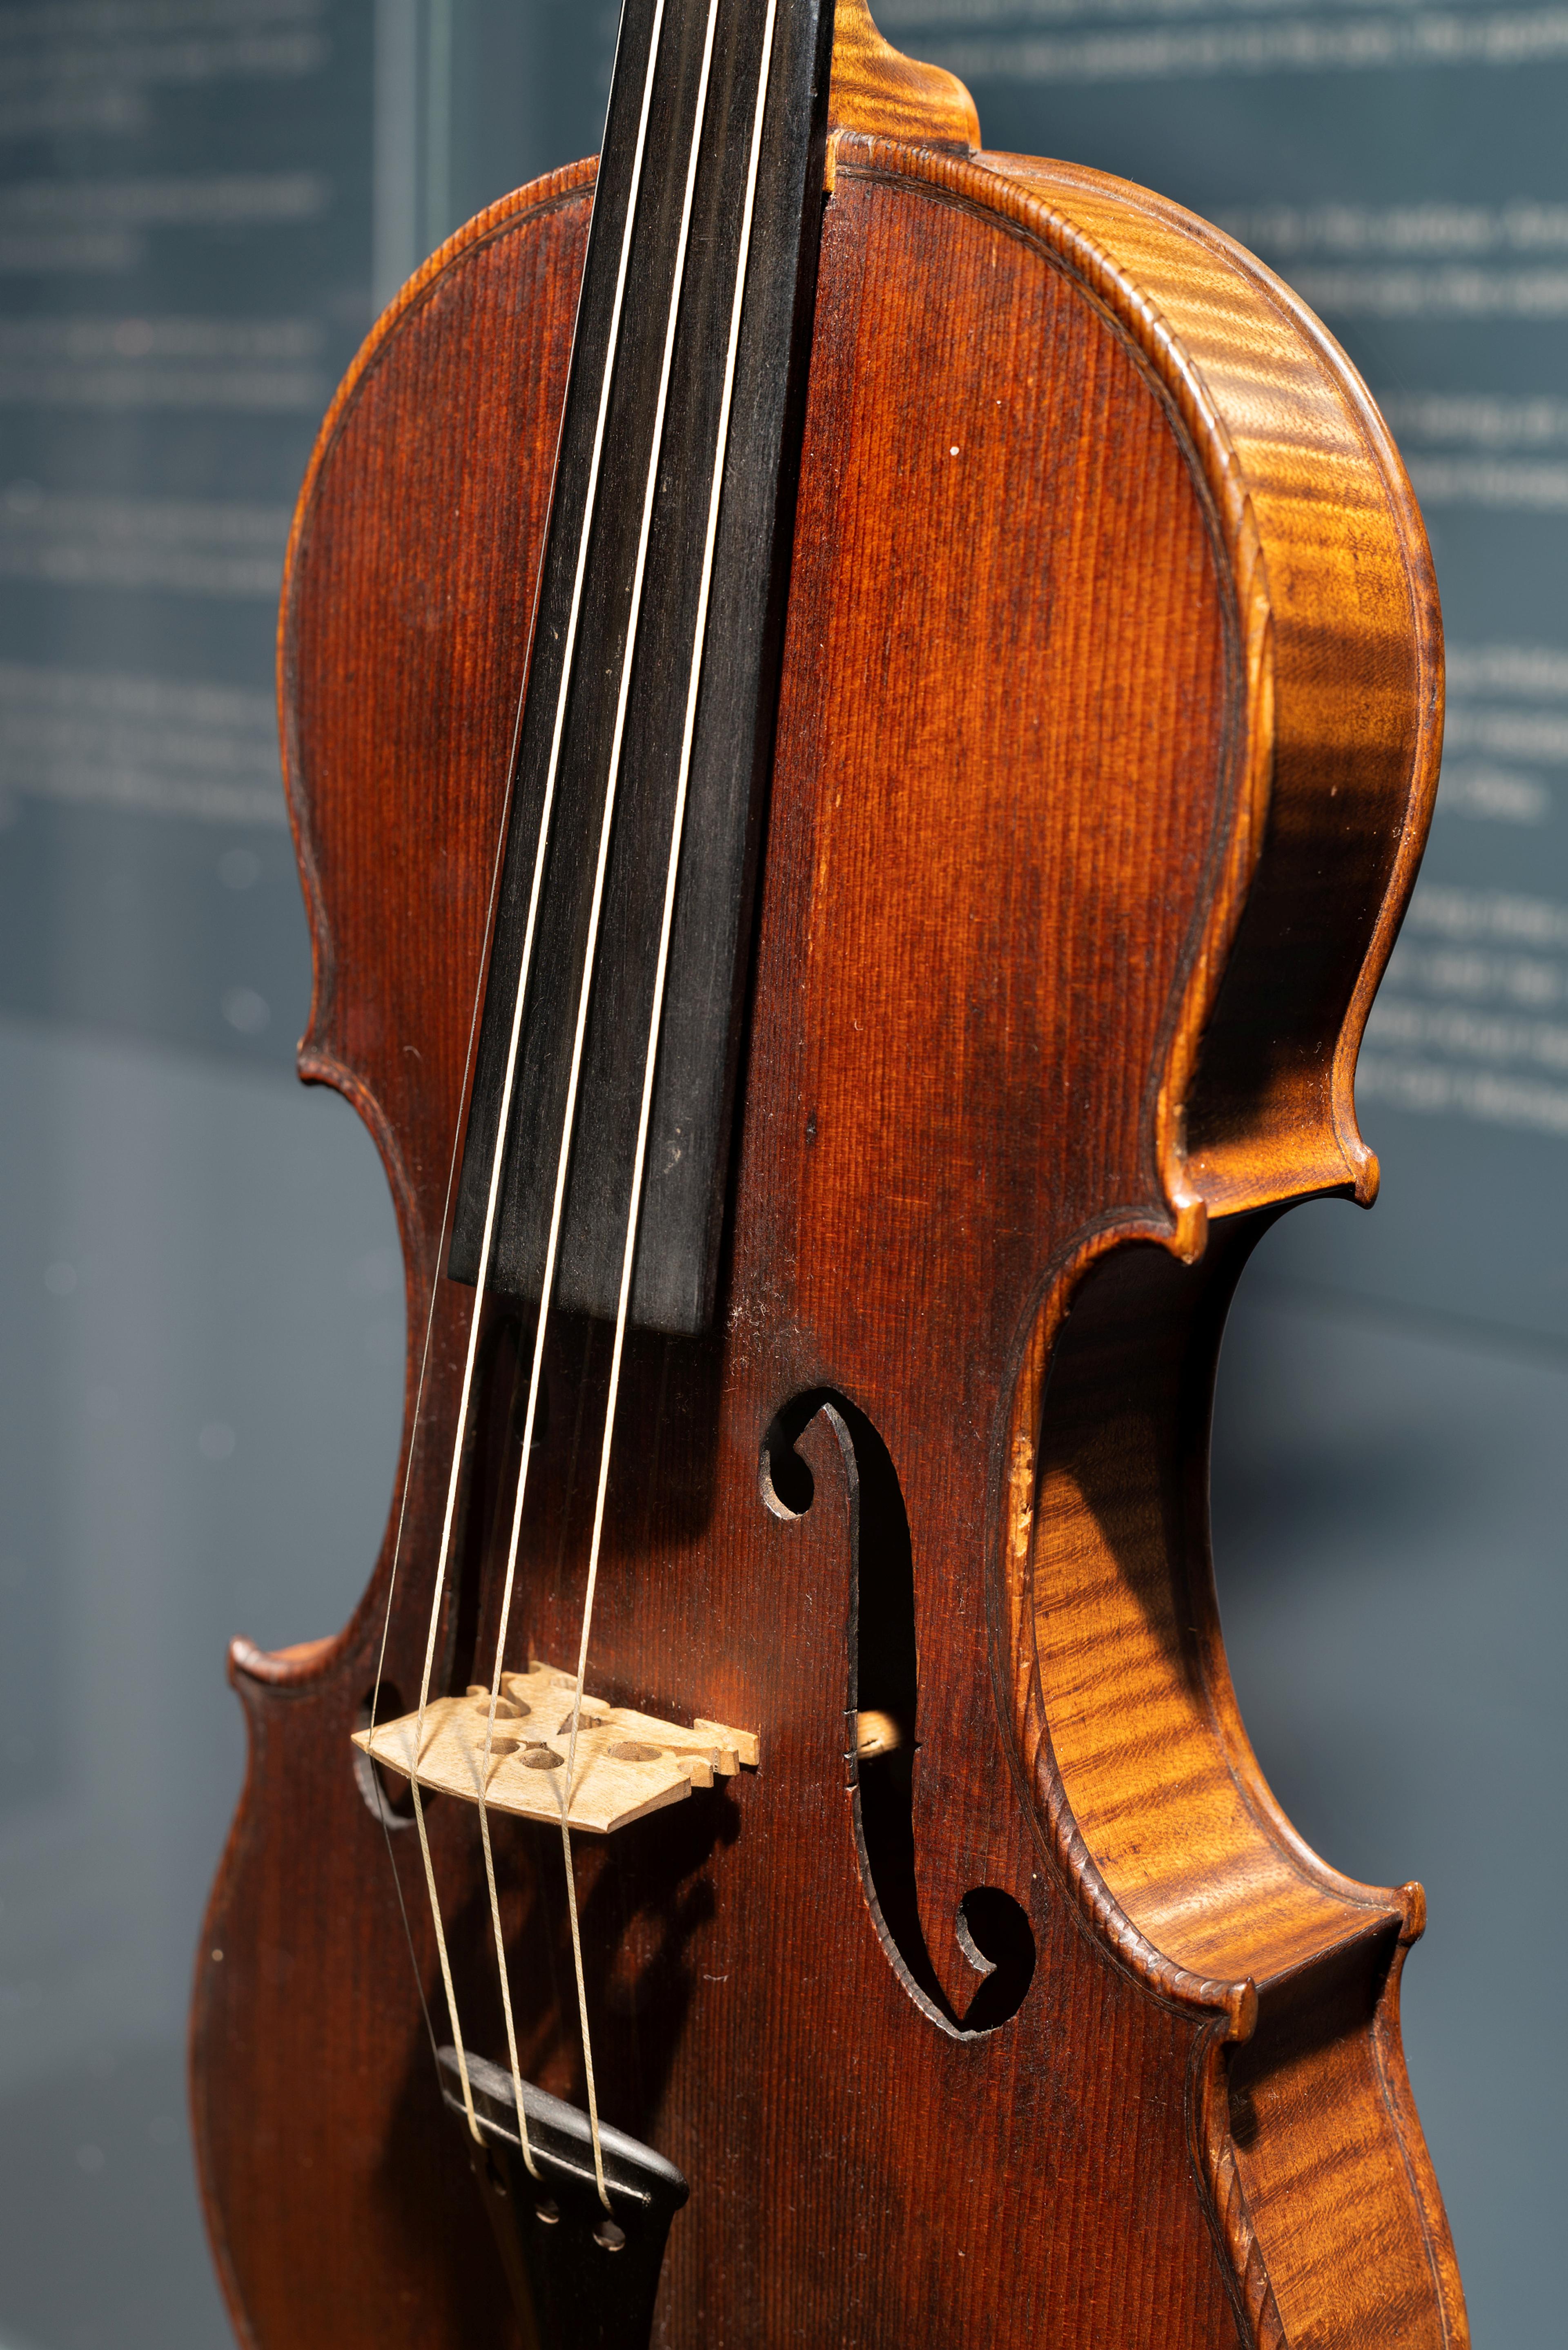 En fiolinkropp i brunt tre, avbildet inne i en monter.